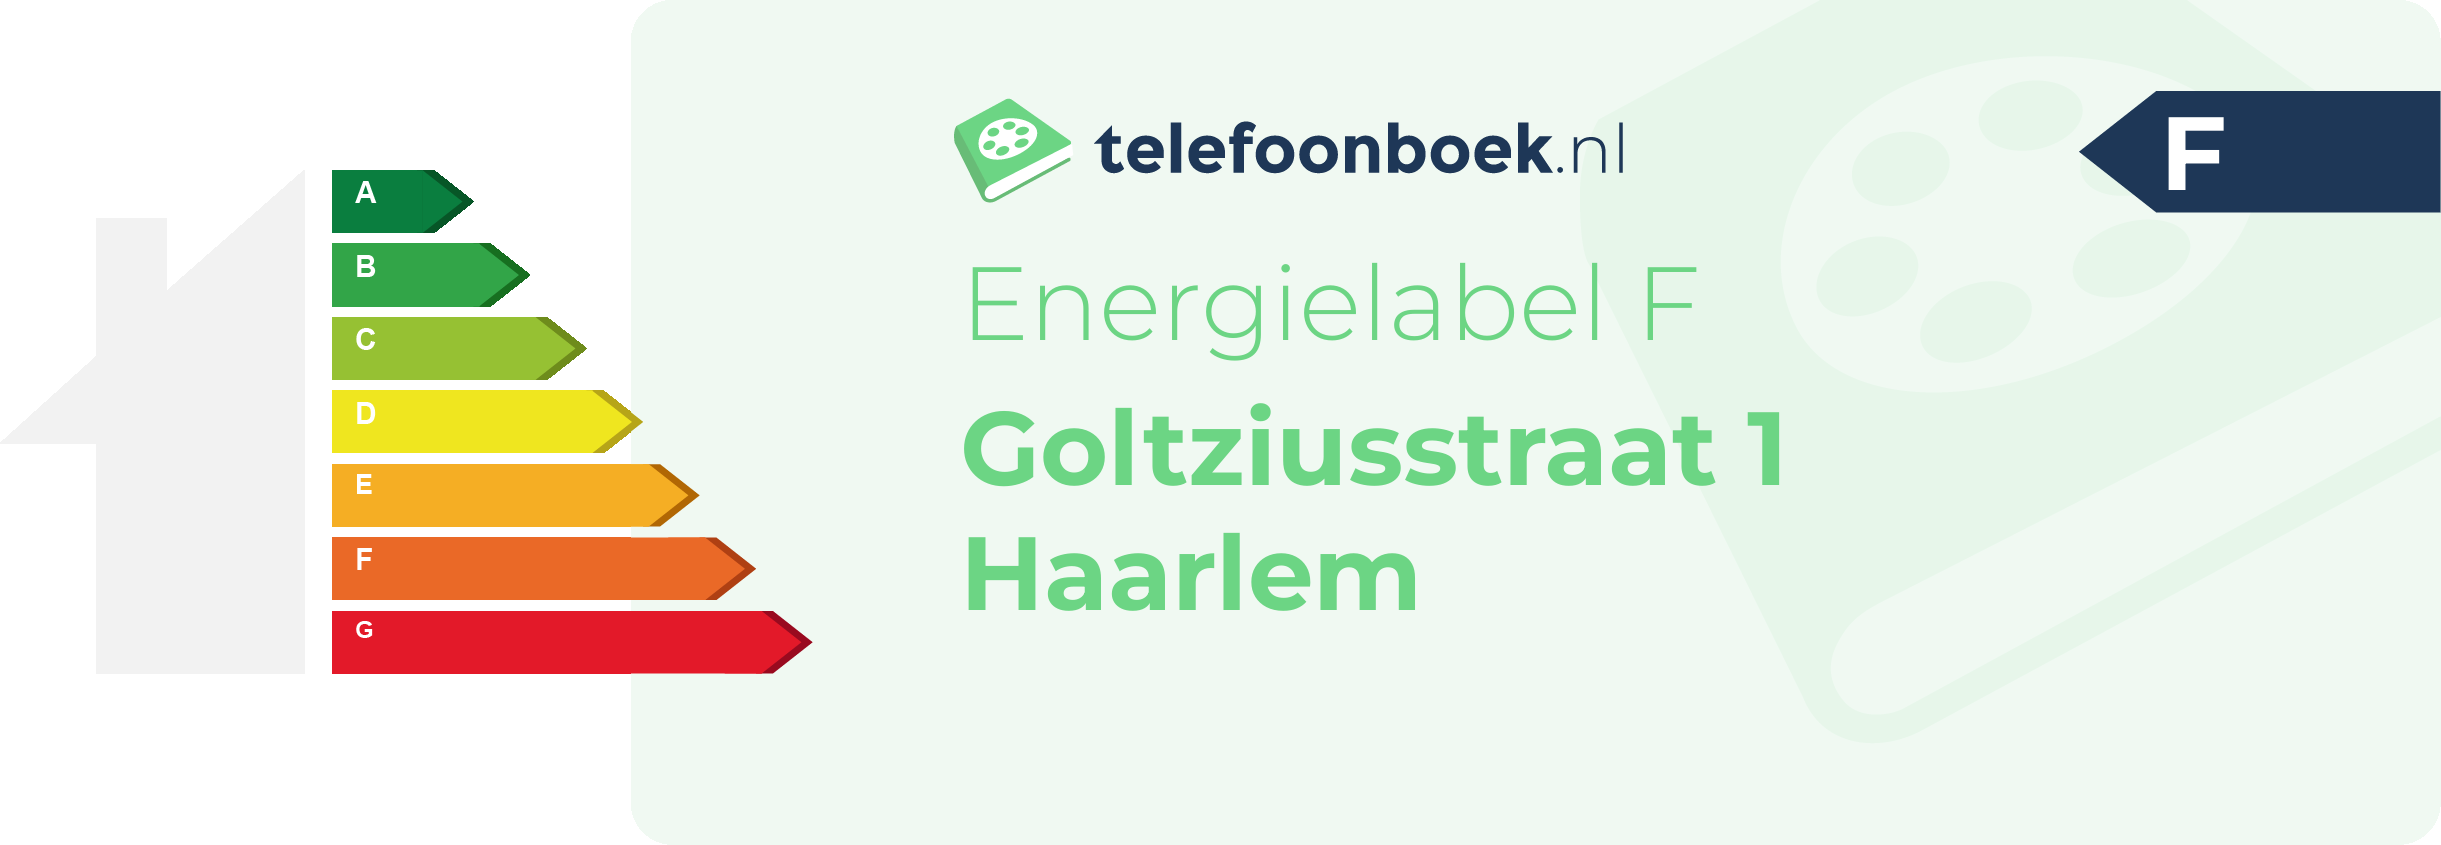 Energielabel Goltziusstraat 1 Haarlem